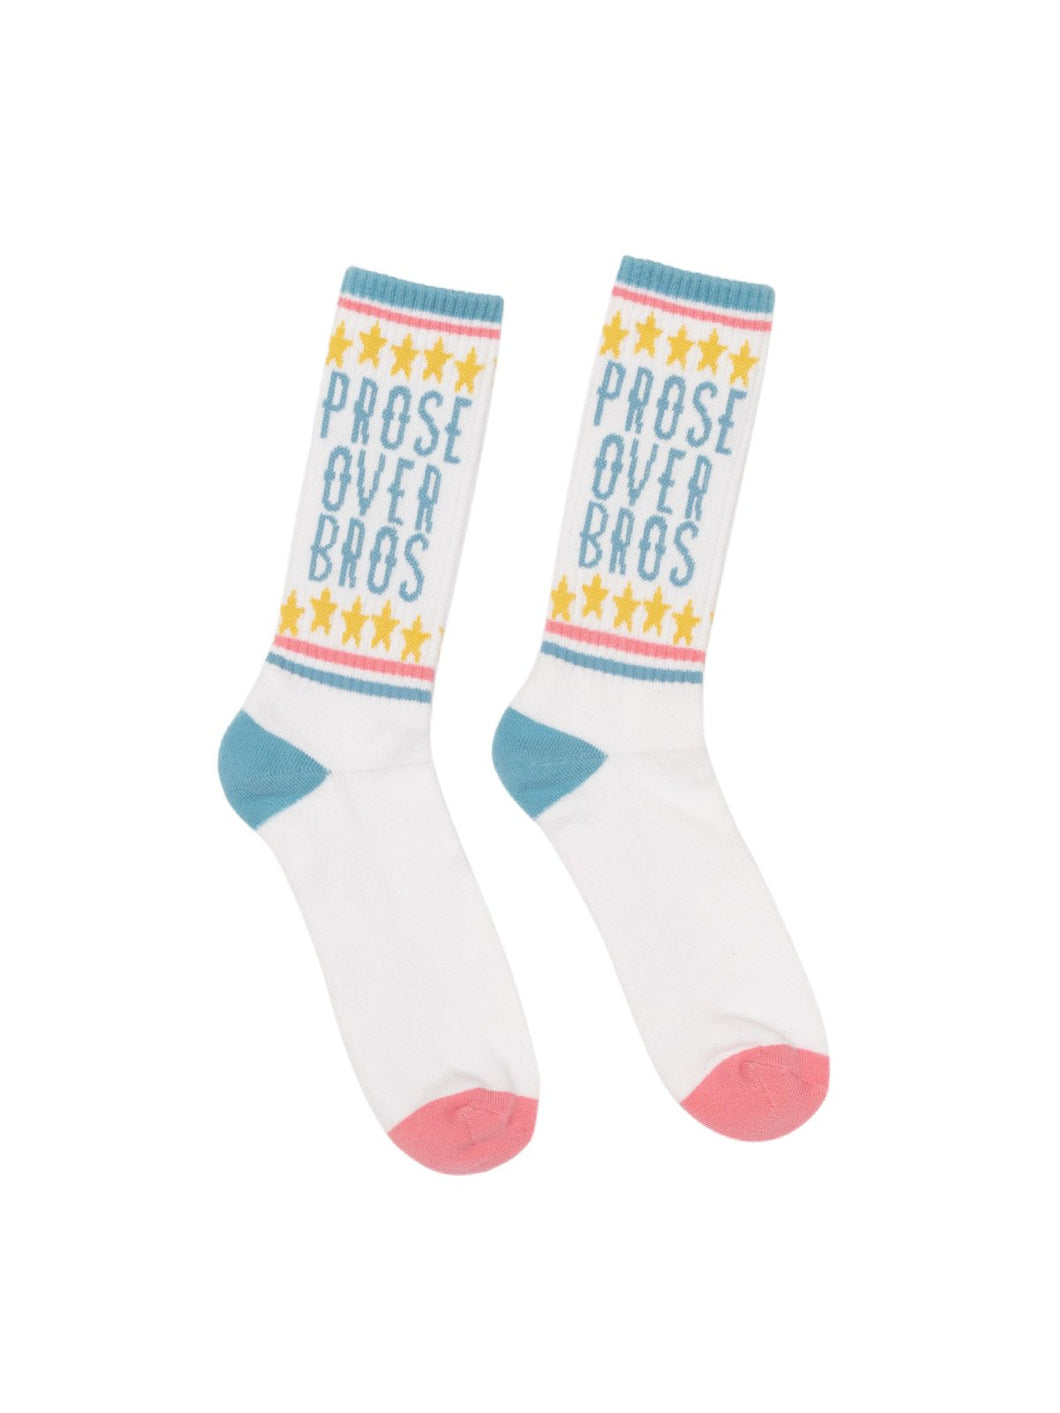 Prose Over Bros Socks